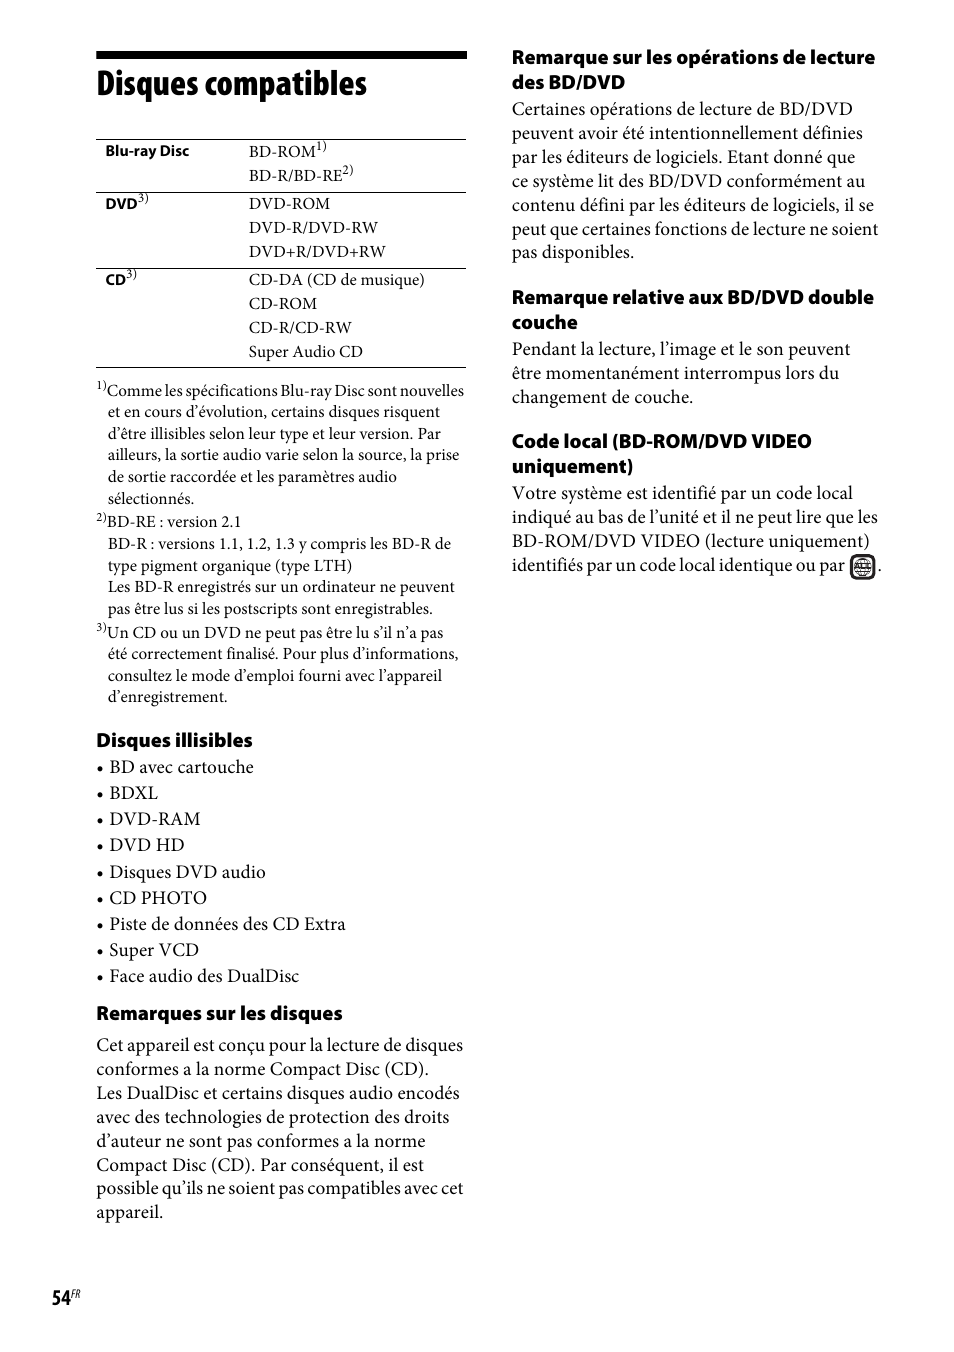 Disques compatibles | Sony BDV-E190 Manuel d'utilisation | Page 54 / 60